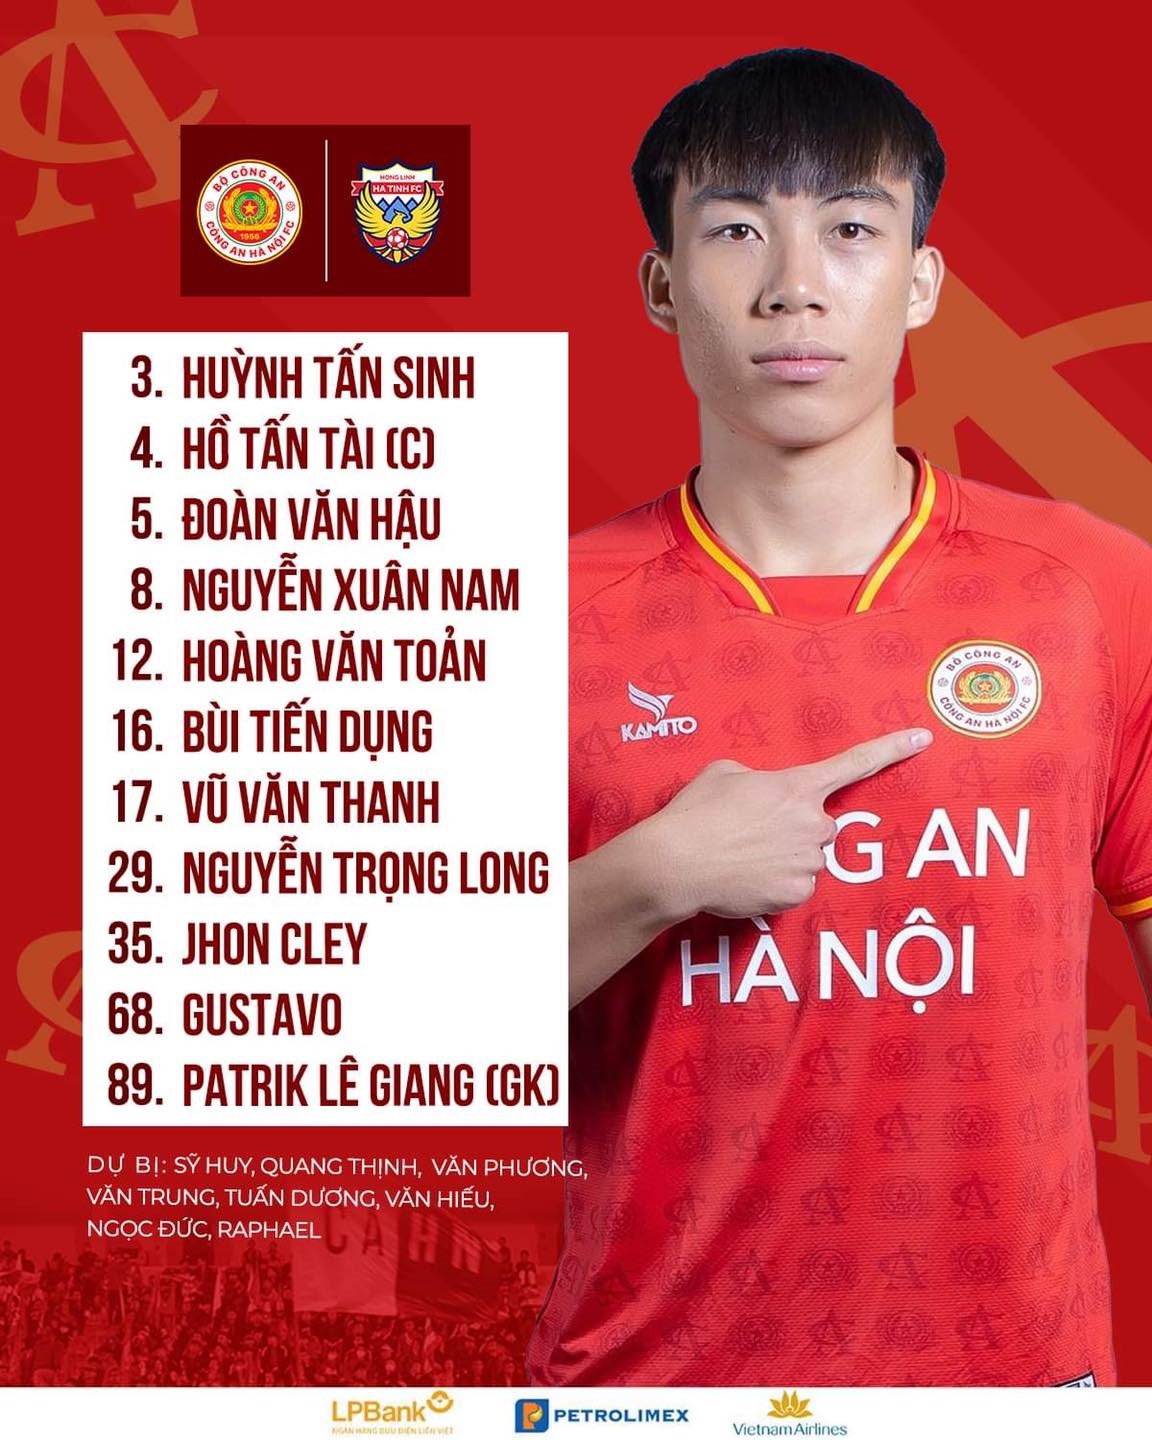 Danh sách đăng kí thi đấu của Công an Hà Nội. Ảnh: CAHN FC